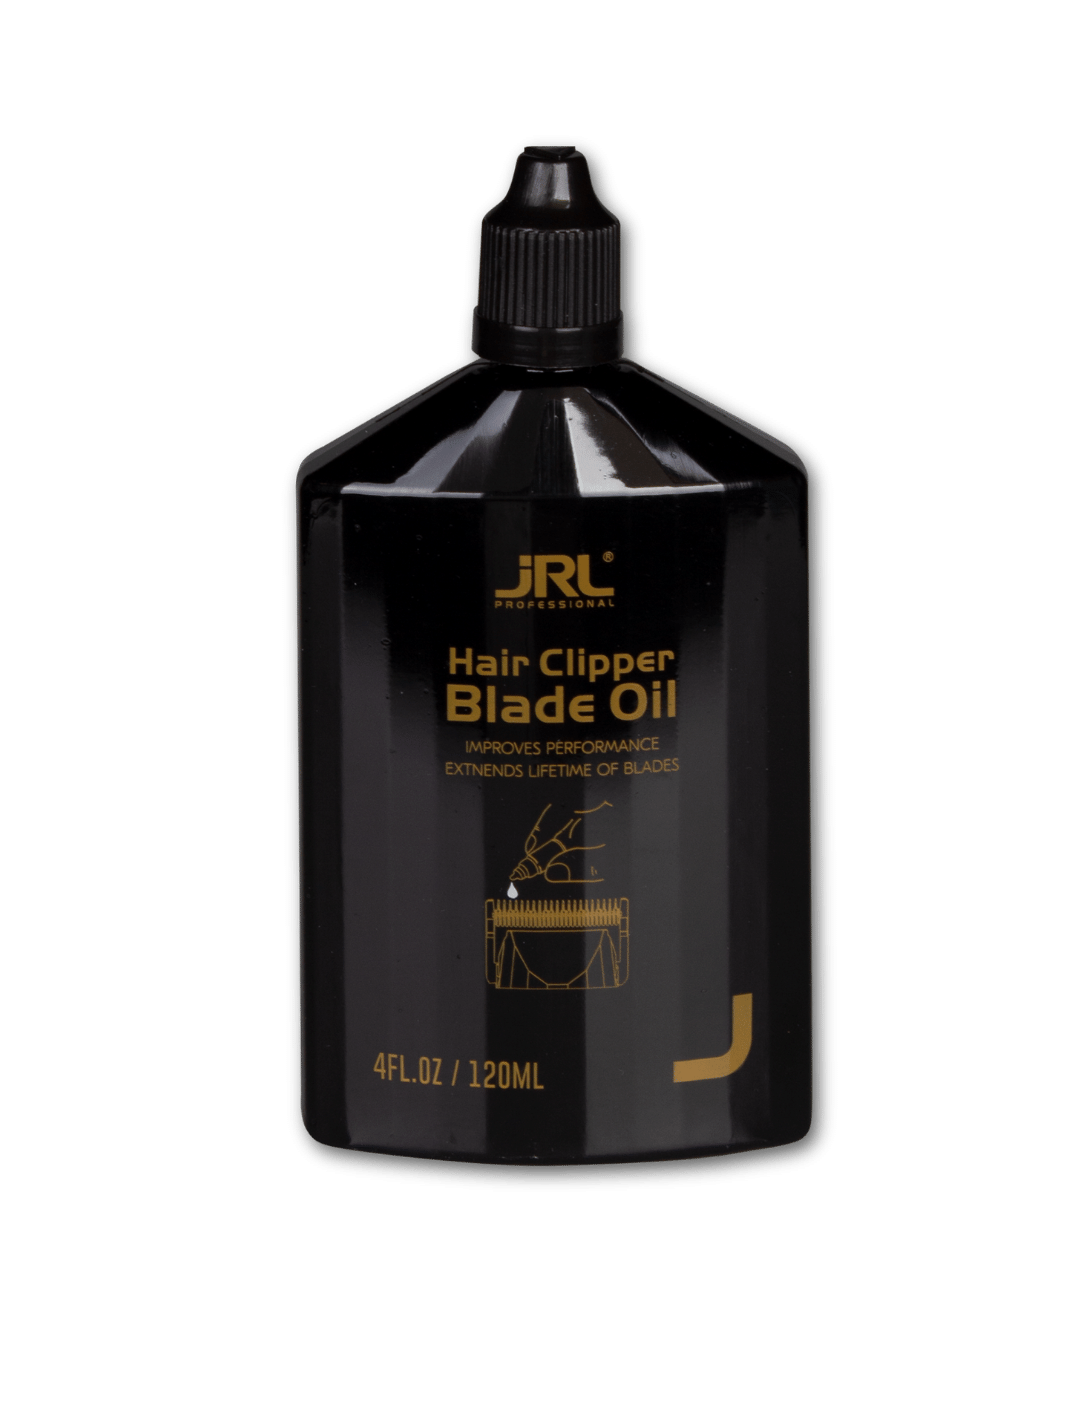 JRL Professional Hair Clipper Blade Oil 120ml, verfügbar bei Phullcutz, zur Leistungssteigerung und Verlängerung der Klingenlebensdauer.